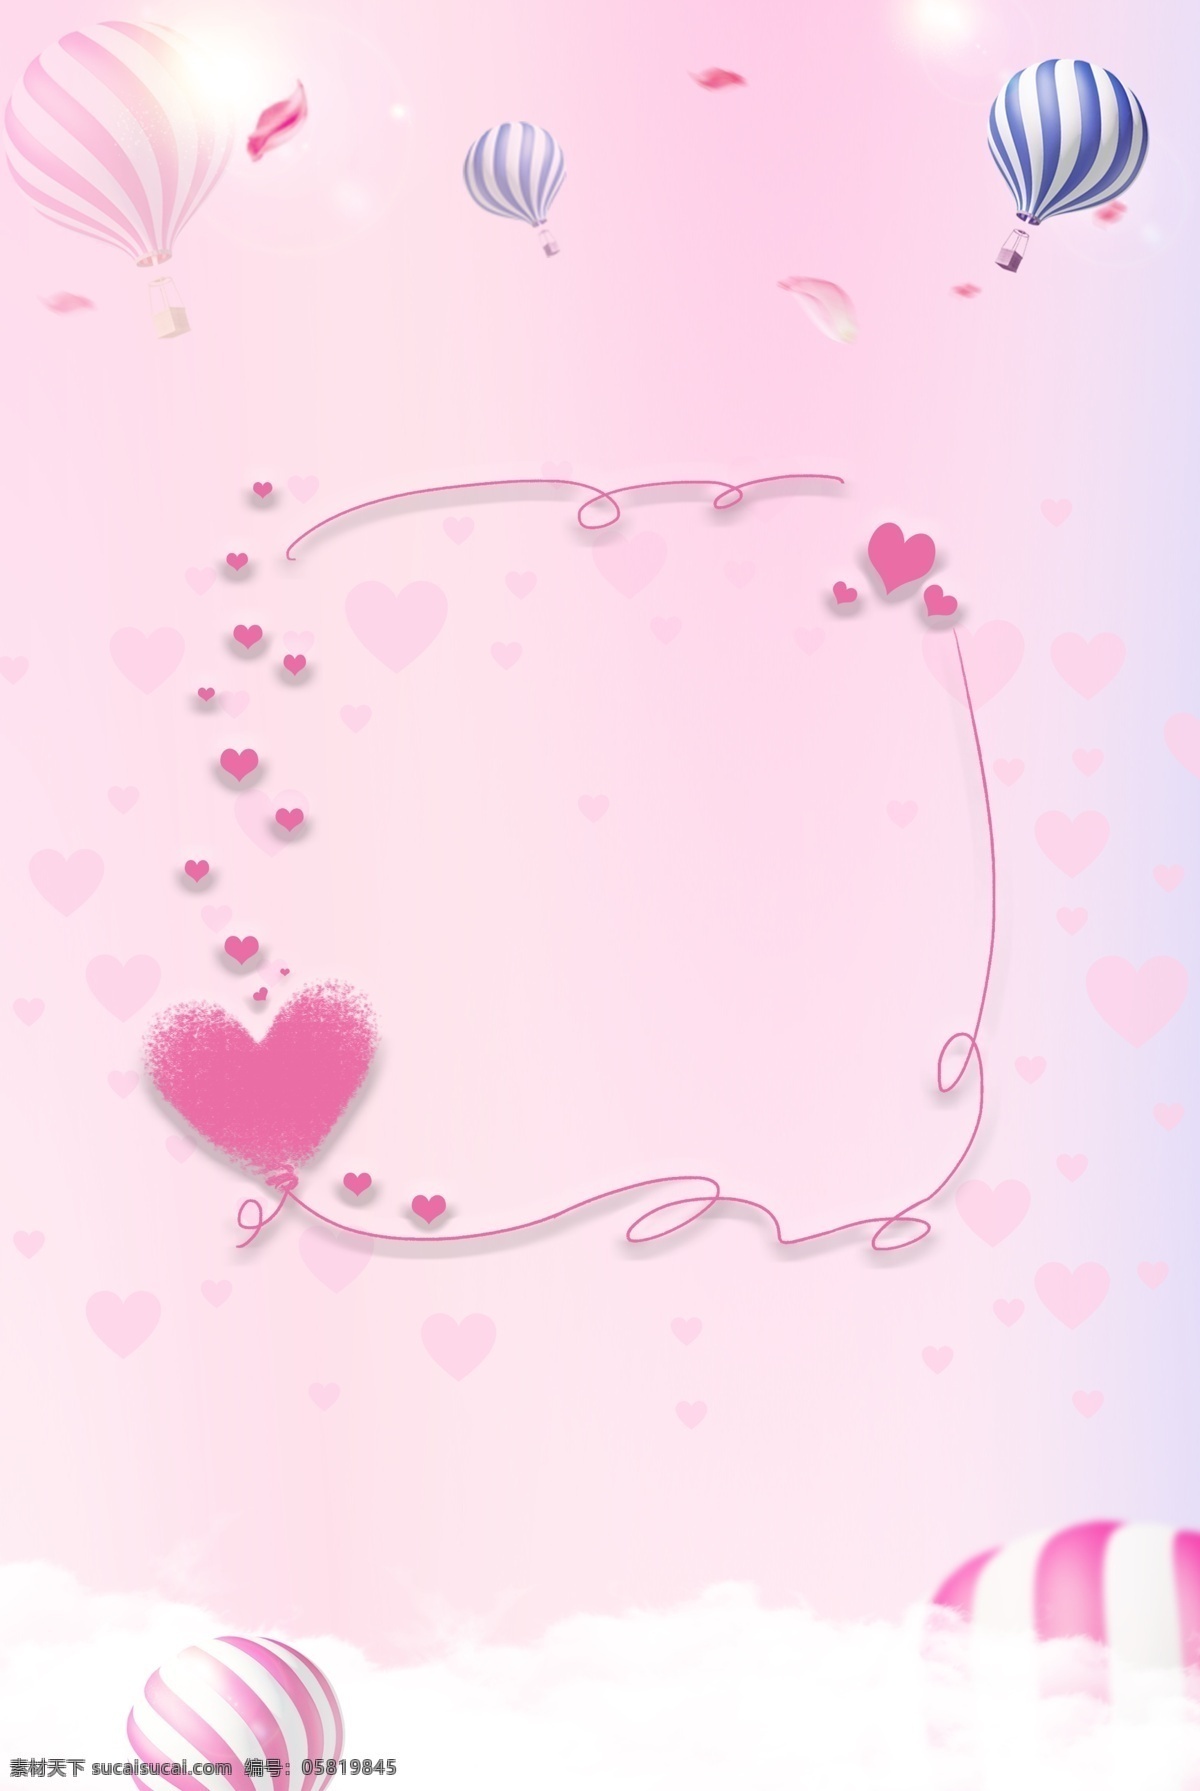 粉色 浪漫 热气球 爱心 边框 云朵 背景 小清新 爱心纹理 爱心边框 平铺